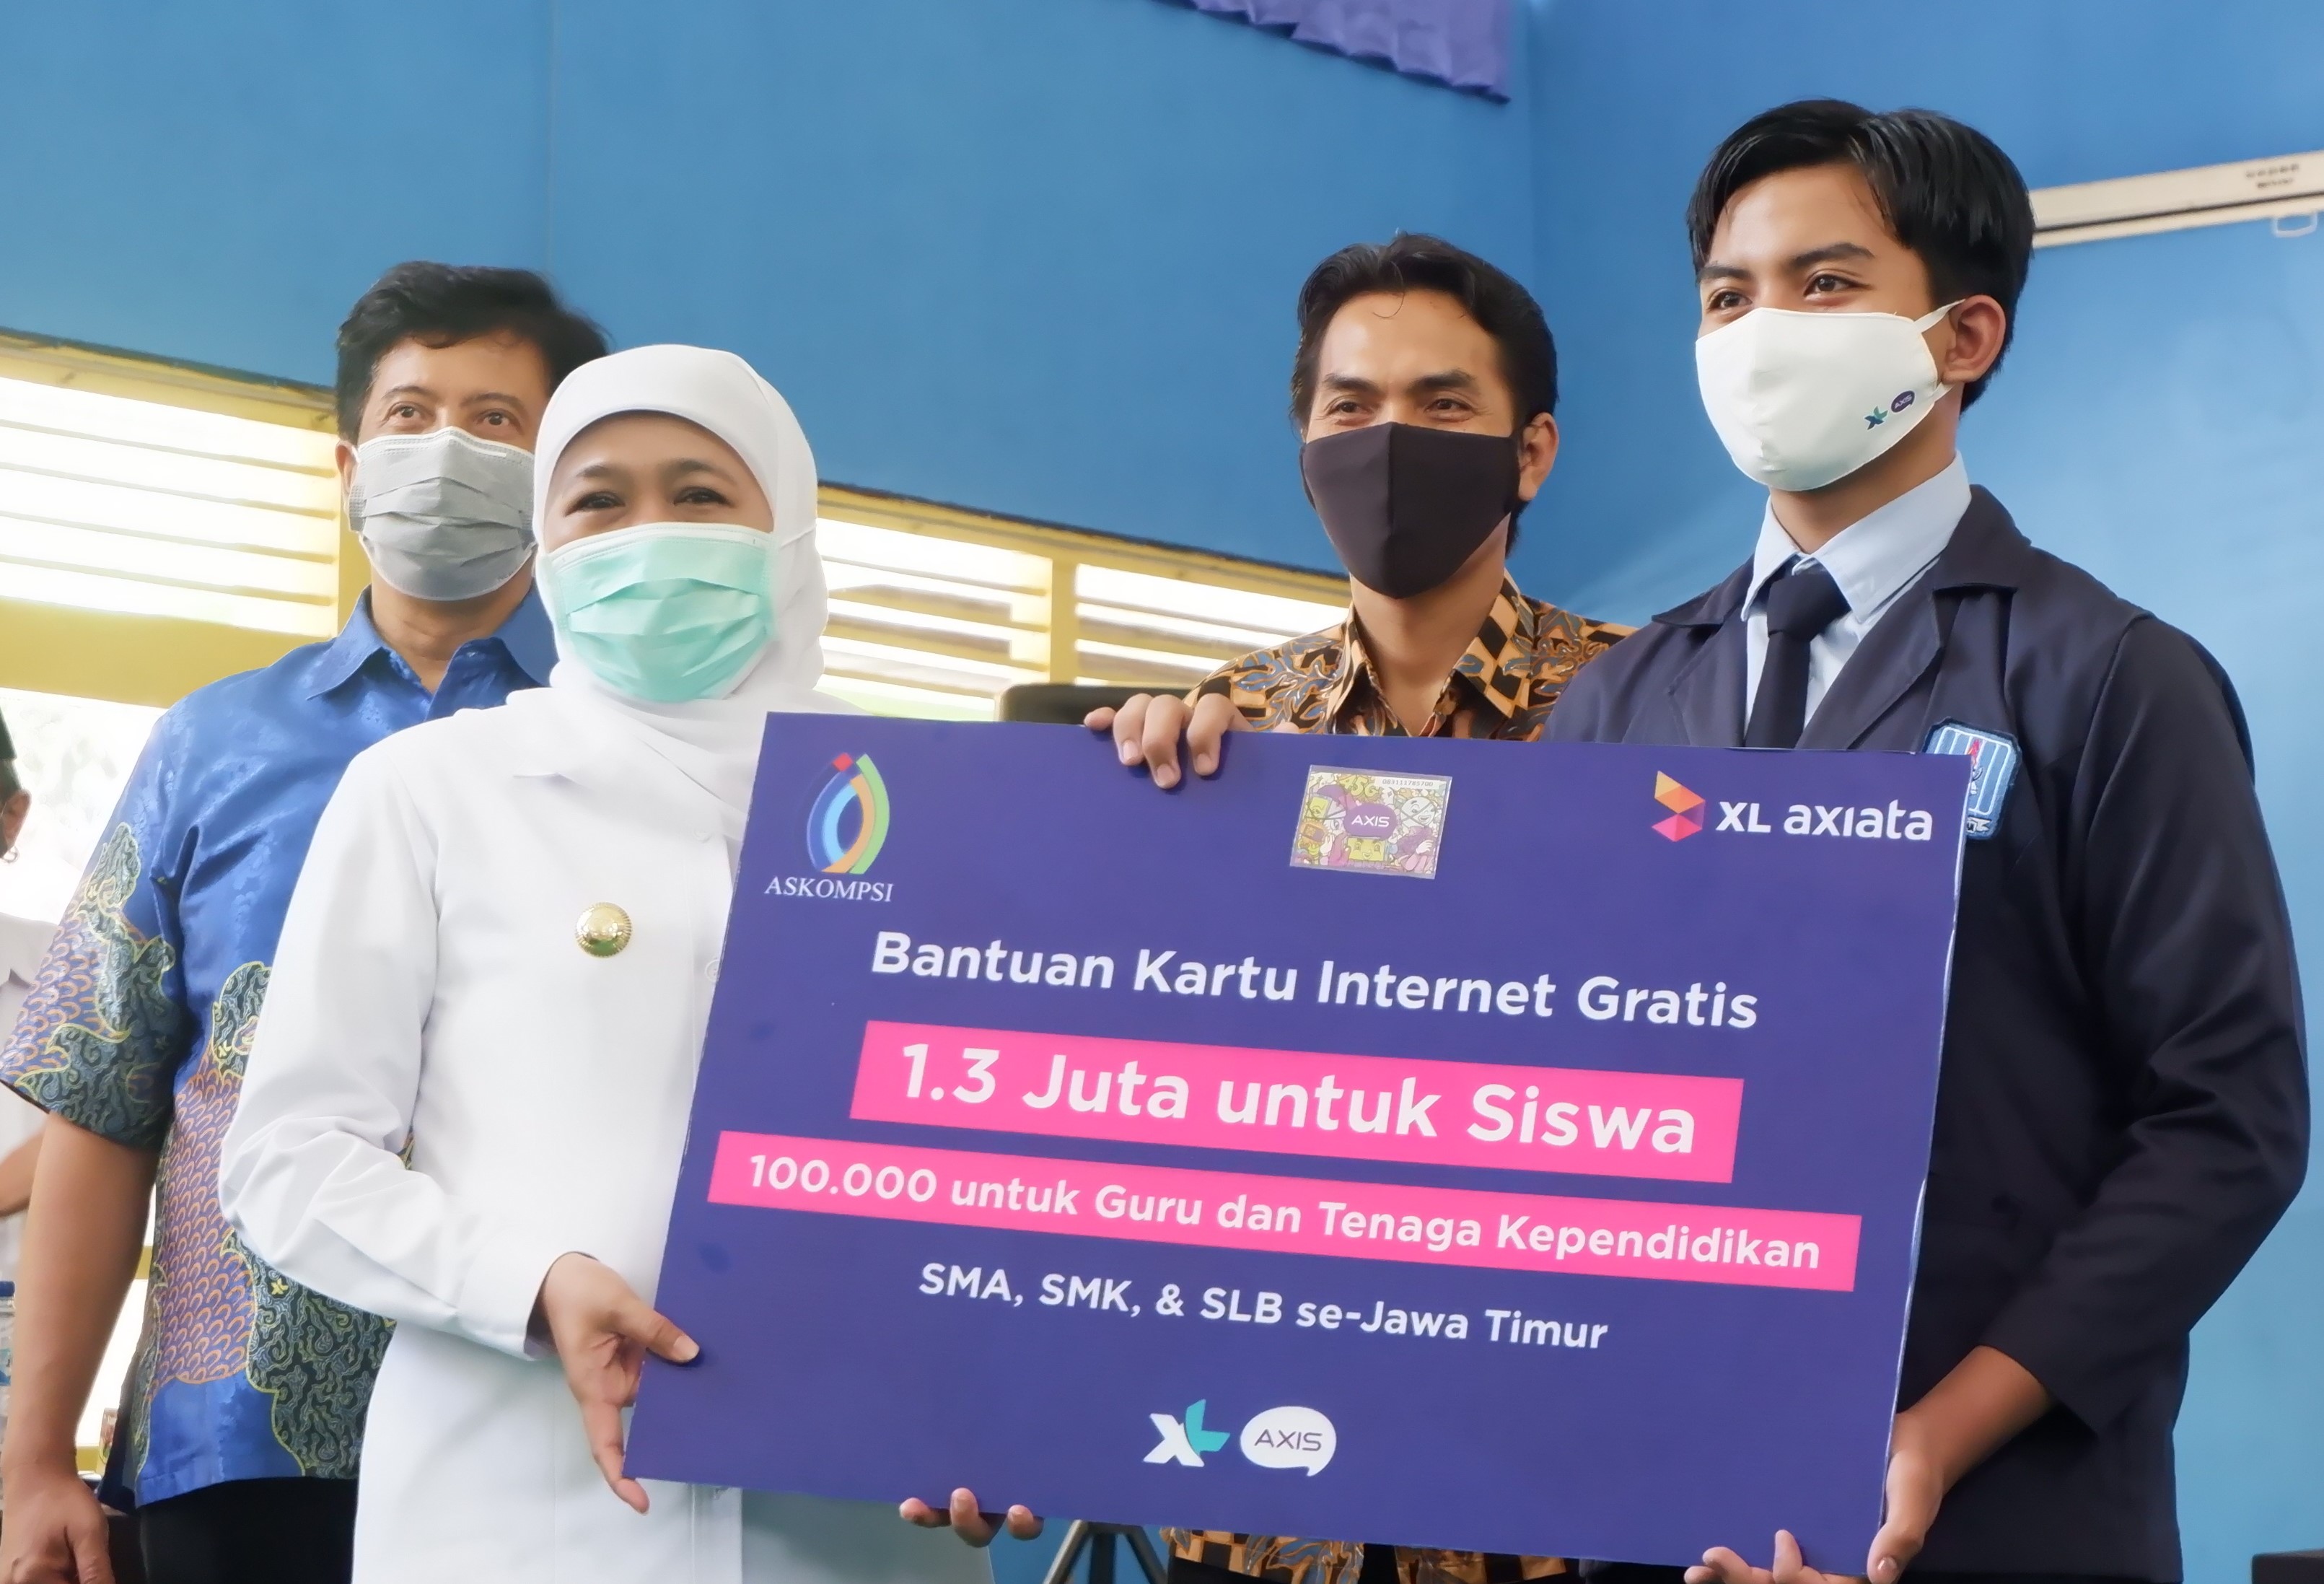 Gubernur Jatim, Khofifah Indar Parawansa, menyerahkan bantuan kartu internet gratis kepada siswa di SMAN 2 Mejayan, Madiun, Jumat 18 September 2020.. (Foto: Istimewa)